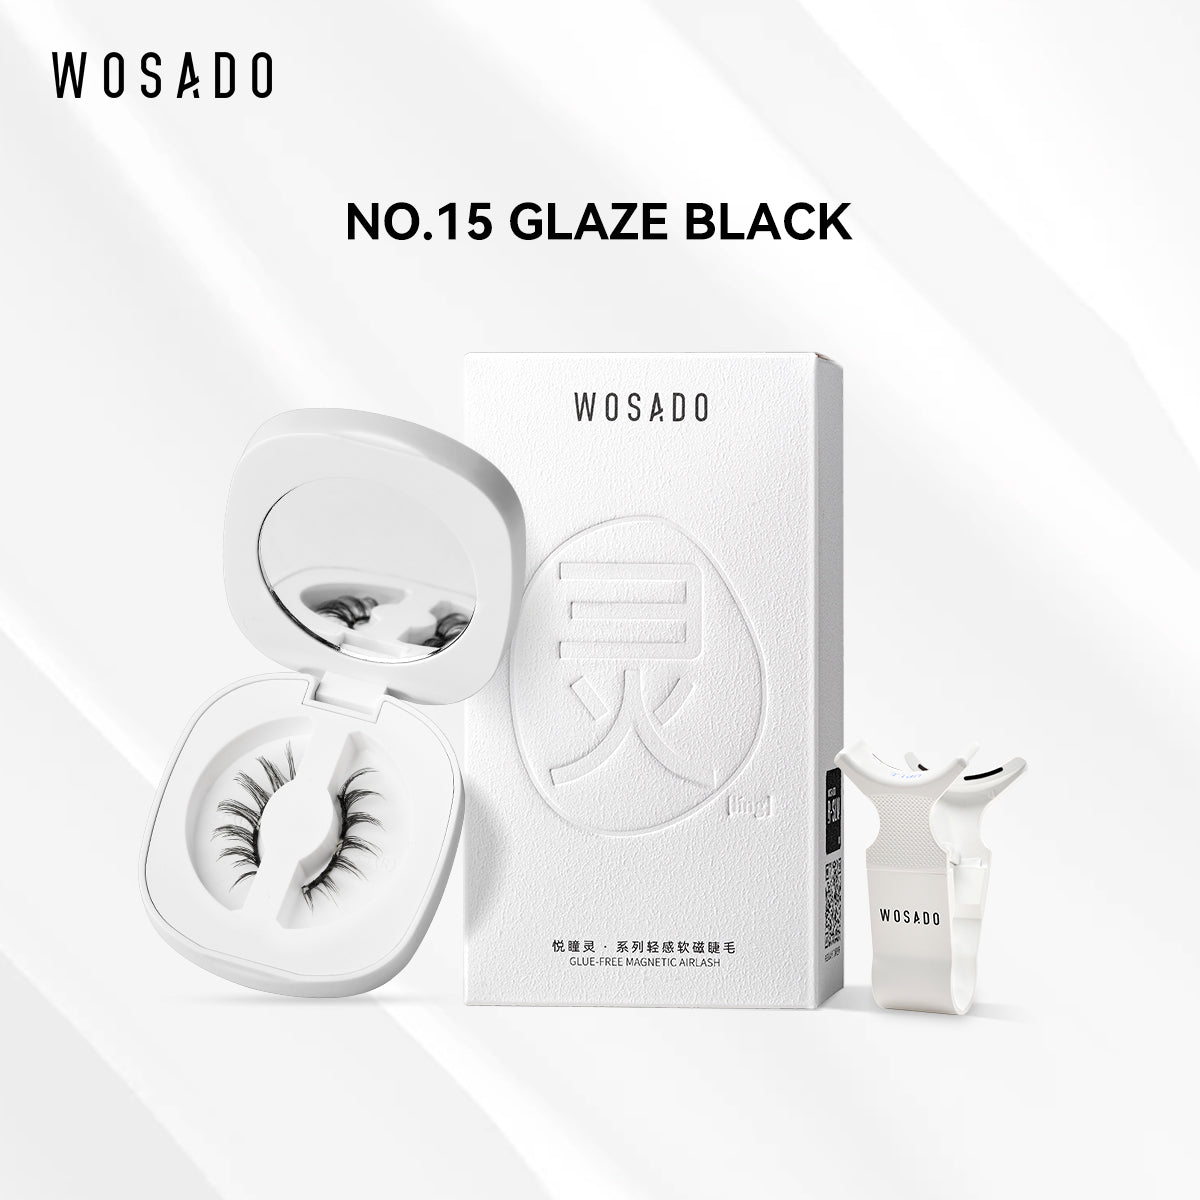 【WOSADO】NO.15 Glaze Black